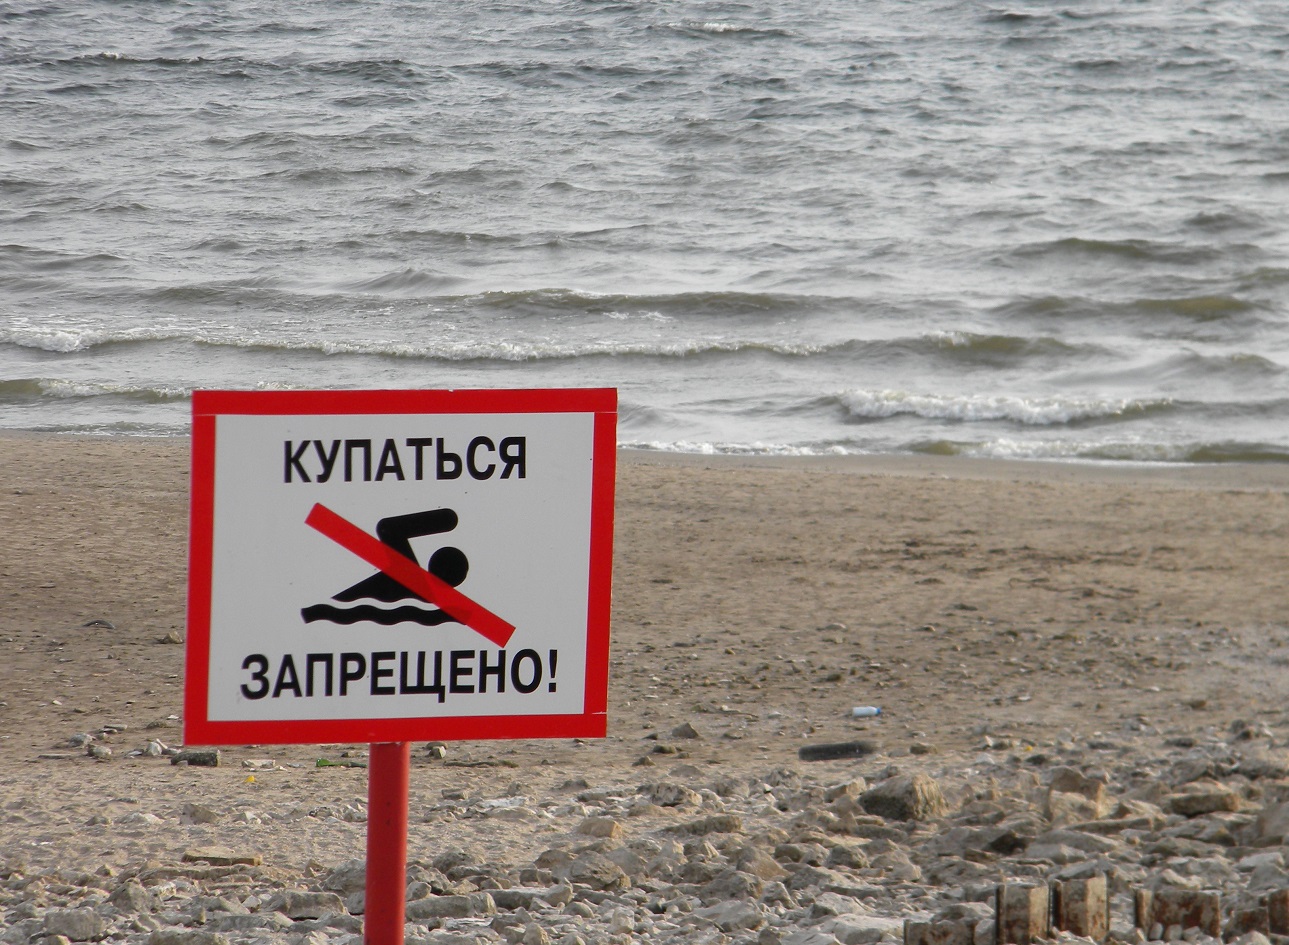 Запрет на купание